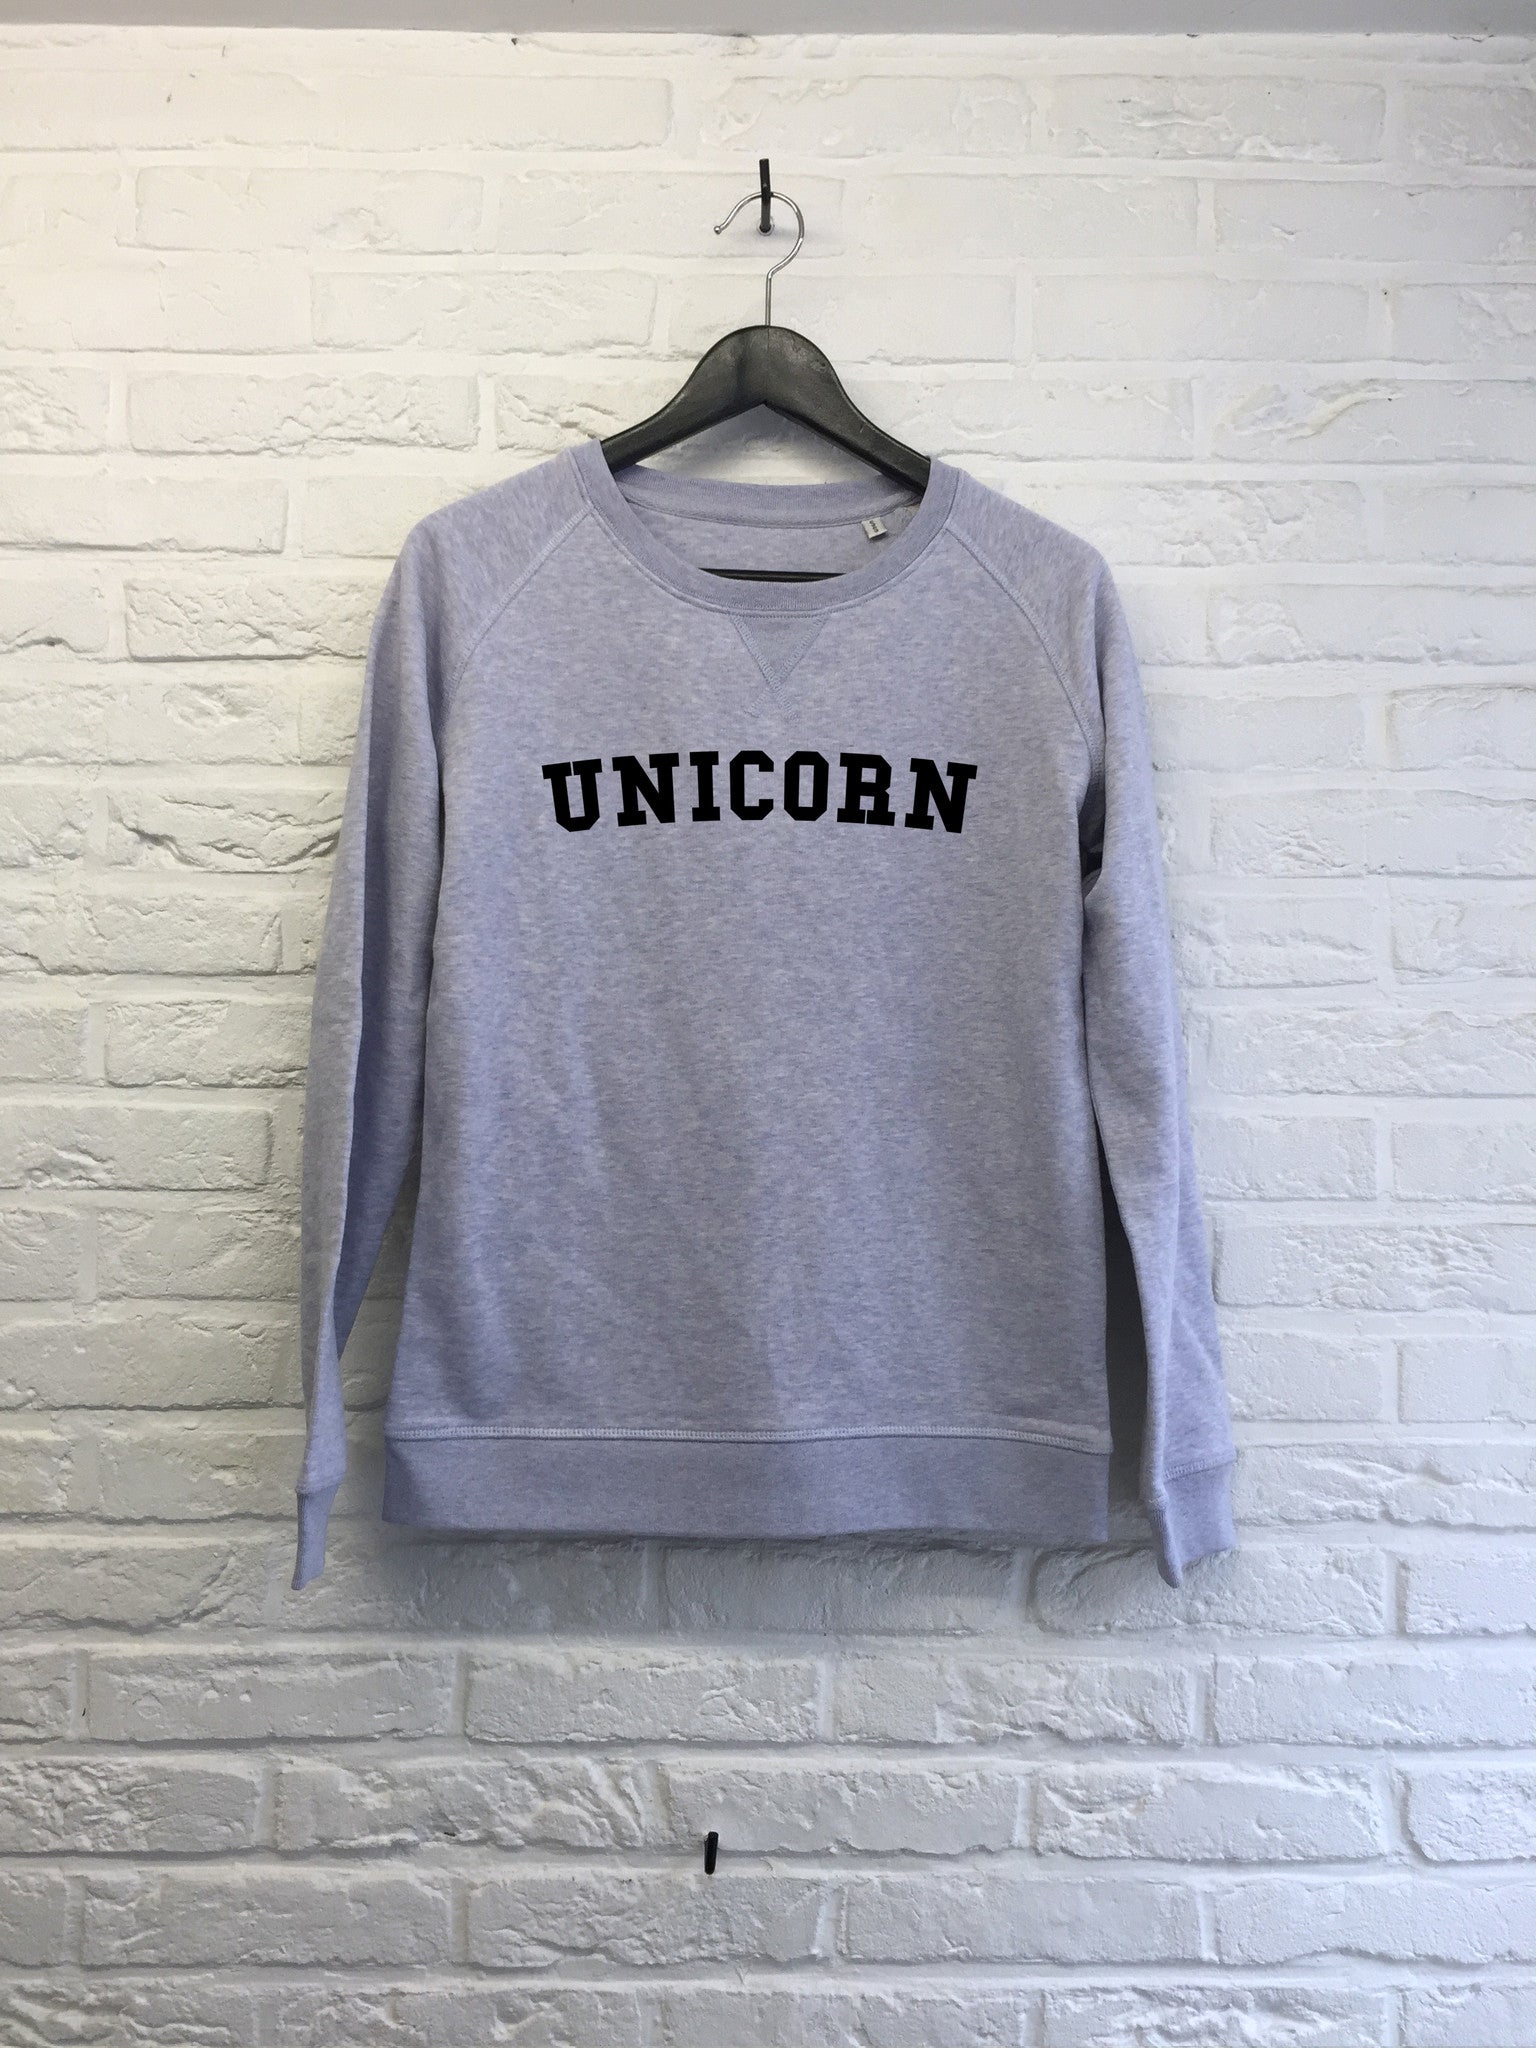 Unicorn - Sweat - Femme-Sweat shirts-Atelier Amelot